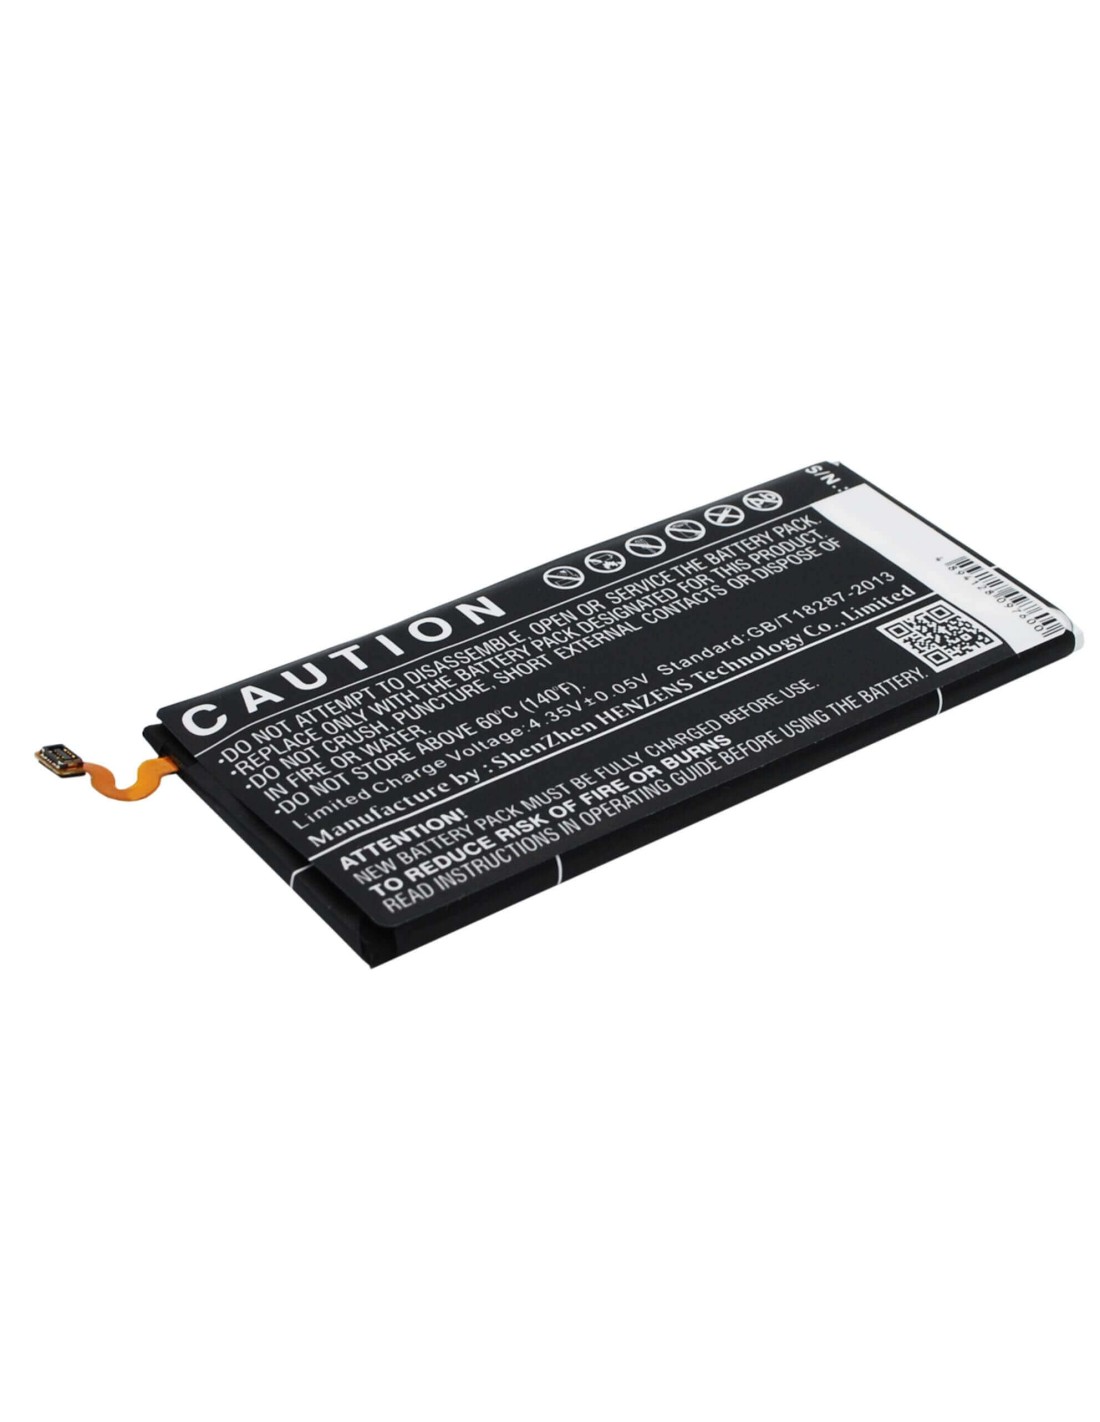 Battery for Samsung Galaxy E5, SM-E500F, SM-E500D 3.8V, 2400mAh - 9.12Wh